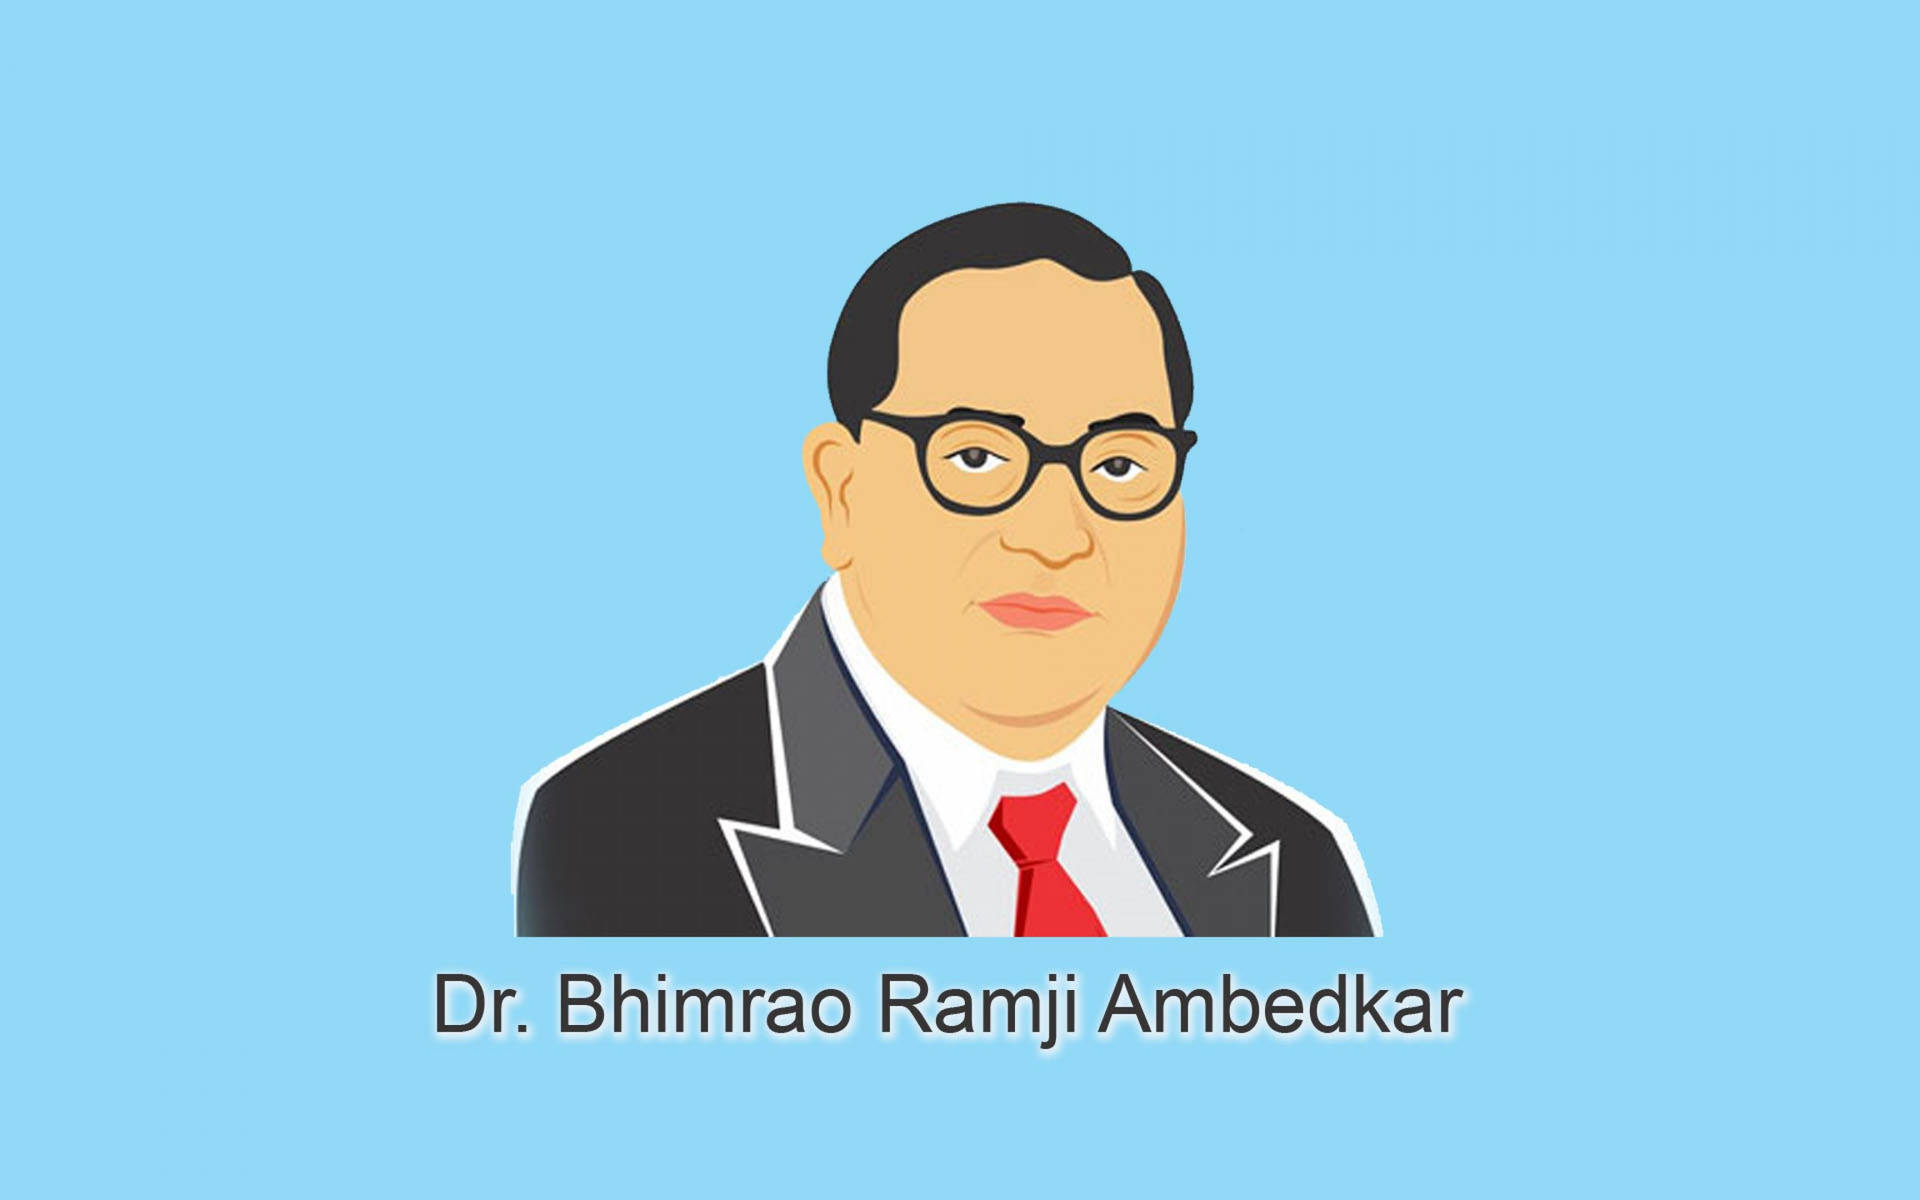 Ambedkar Animated Illustration Background